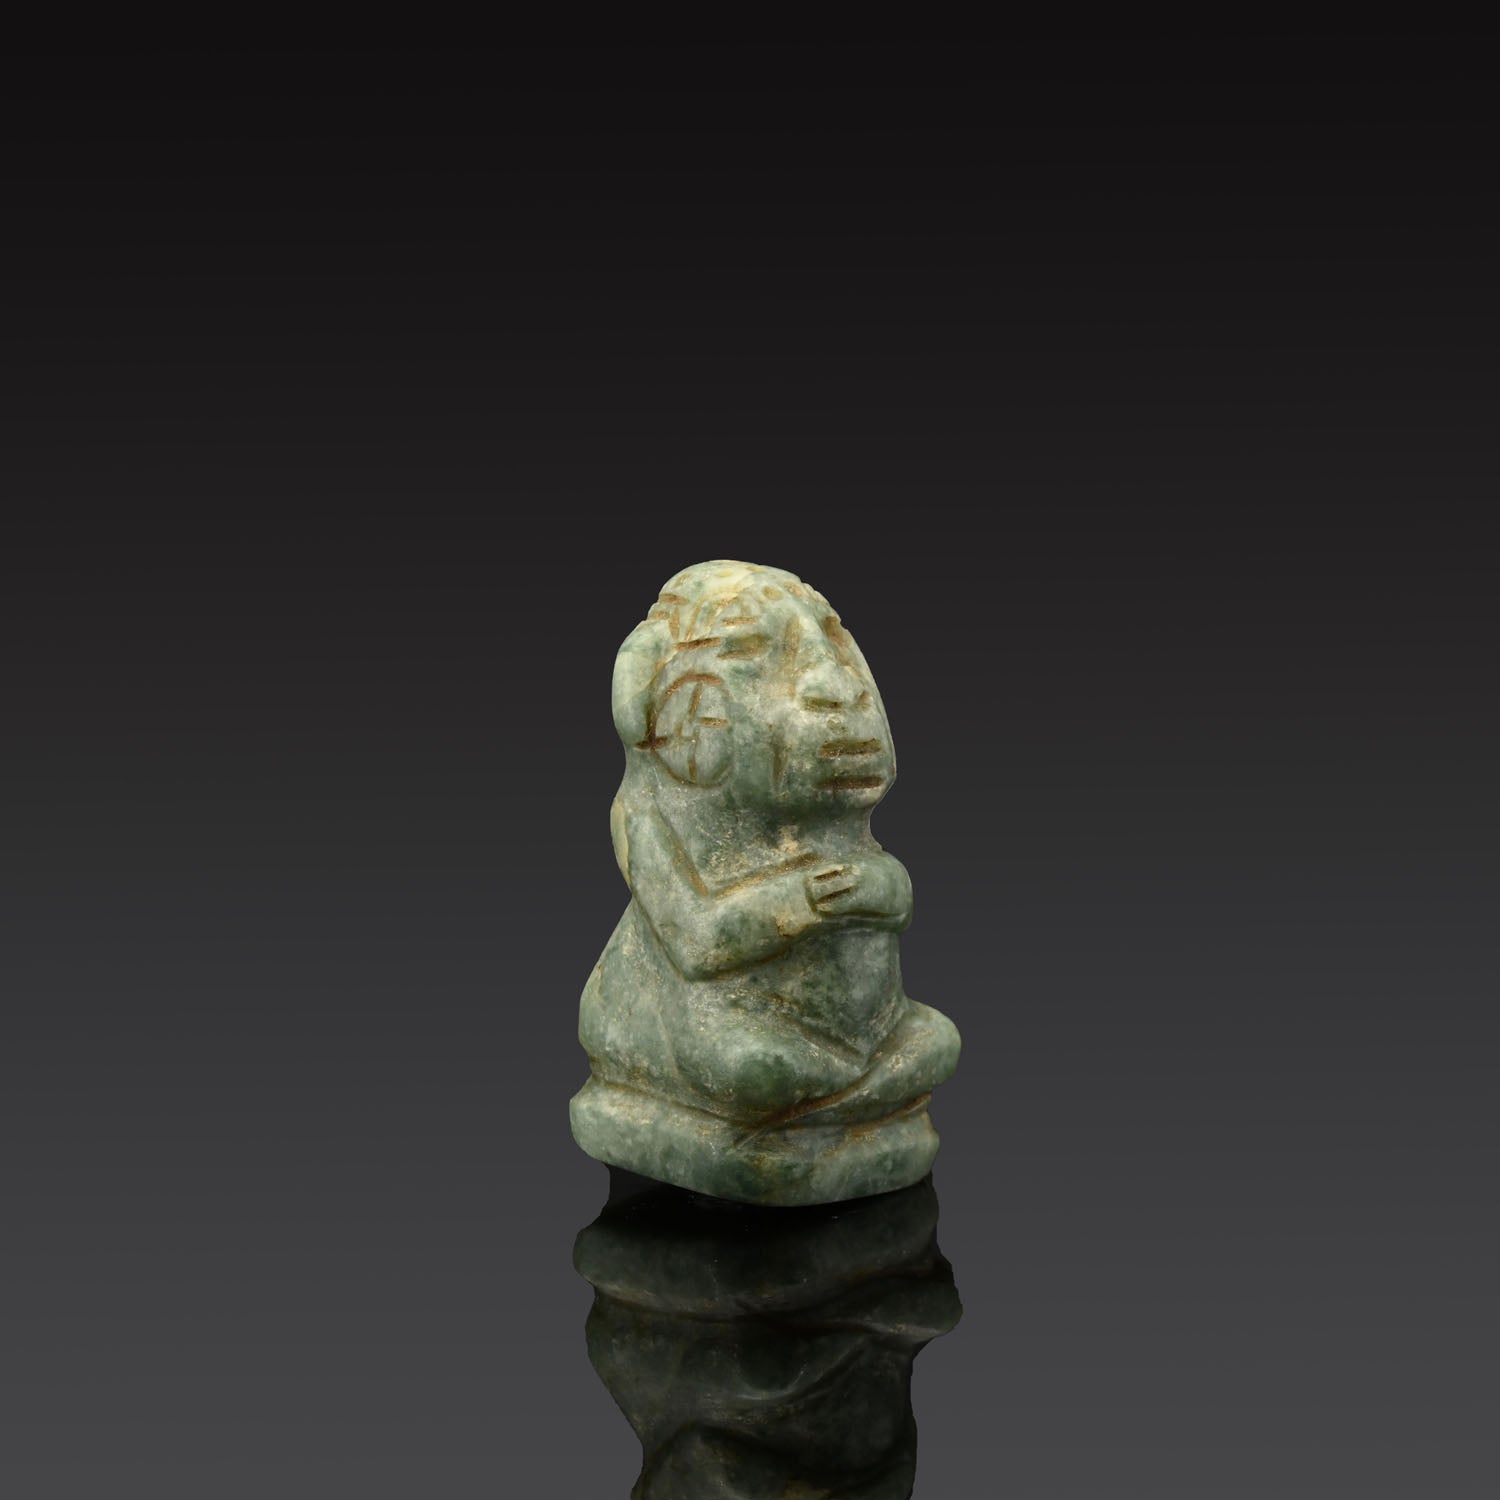 A Seated Mayan Jade Figure, Classic Period, ca. 600 - 1400 CE